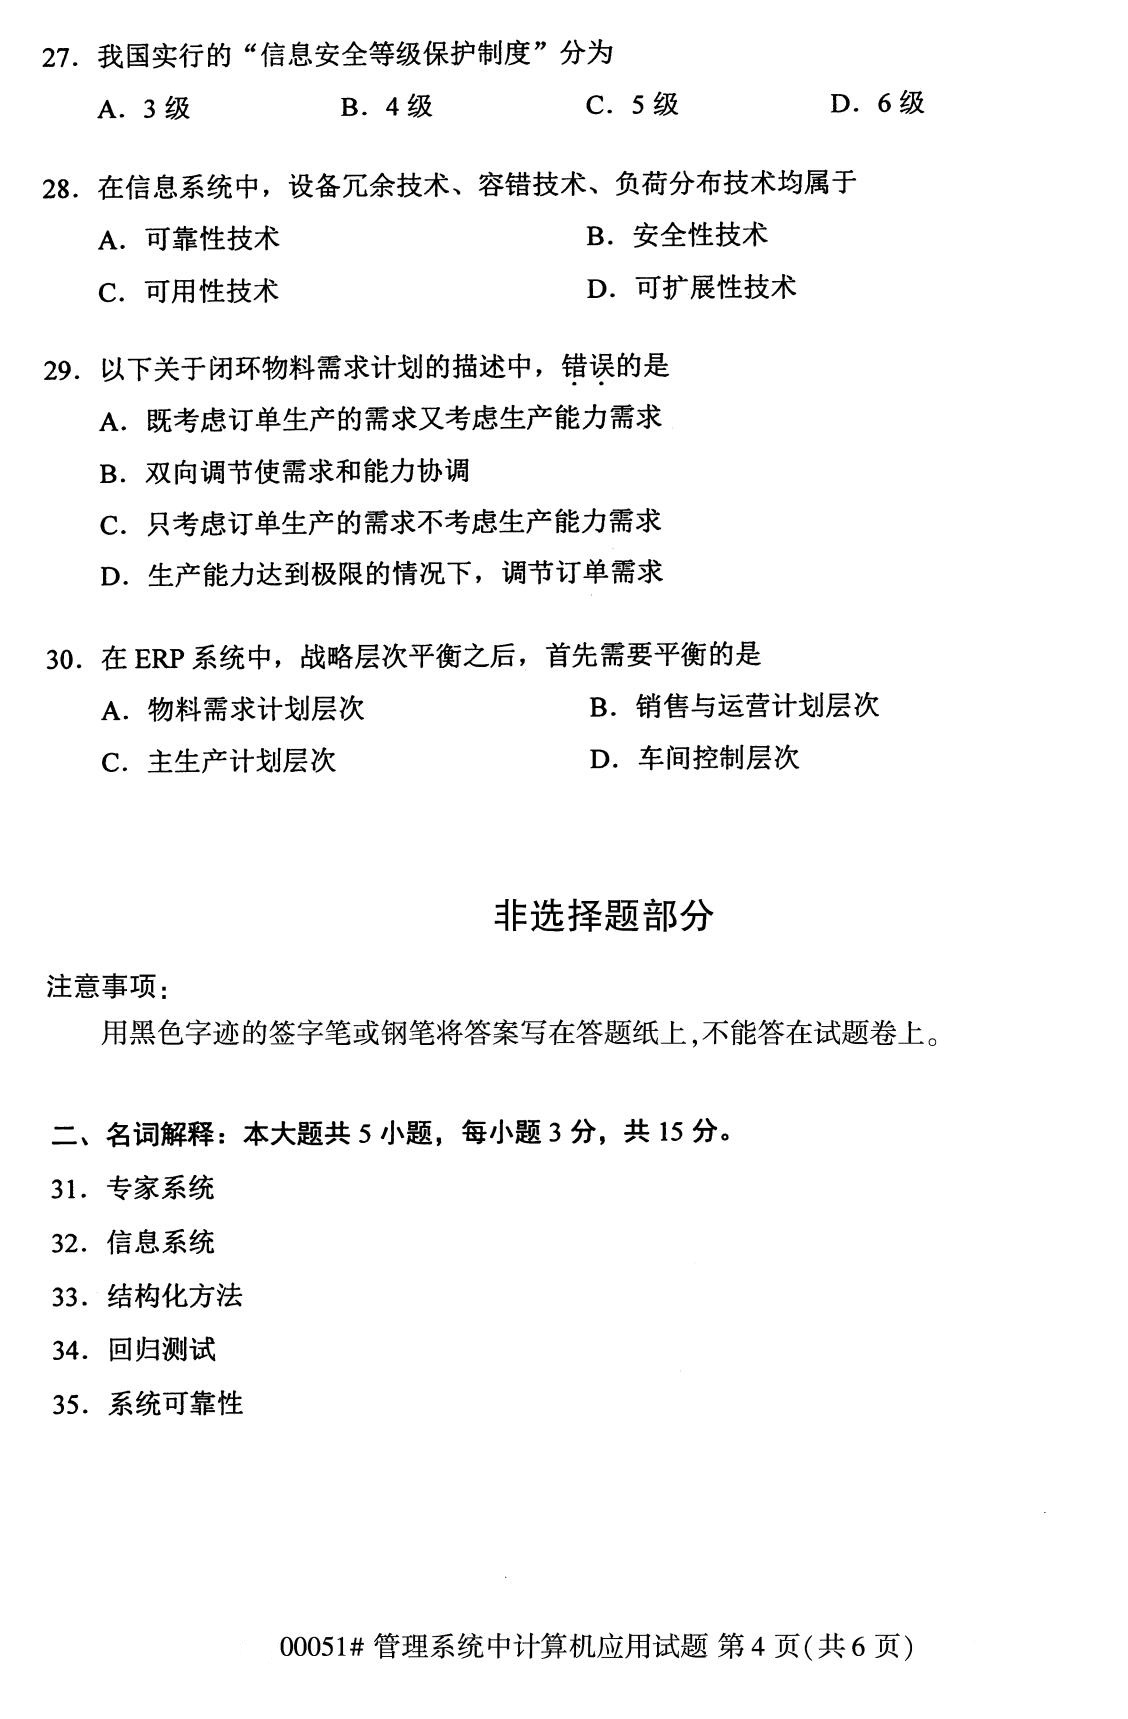 2020年8月辽宁省自学考试本科管理系统中计算机应用真题(图4)